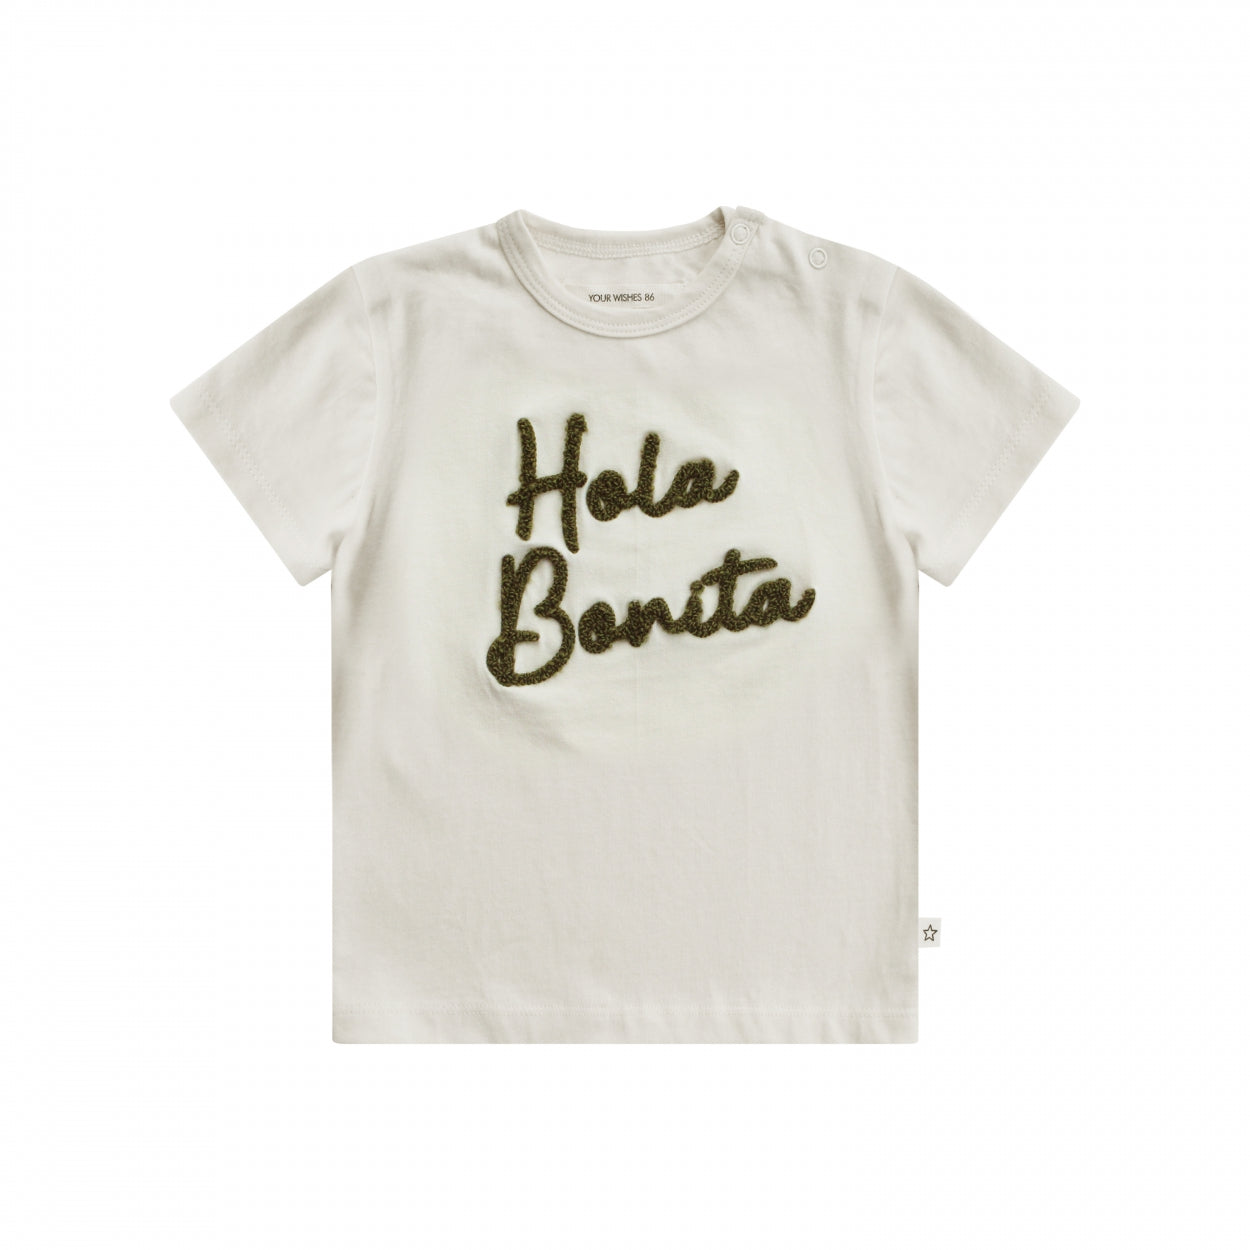 Meisjes T-Shirt Bonita | Arwen van Your Wishes in de kleur Ivory in maat 134/140.